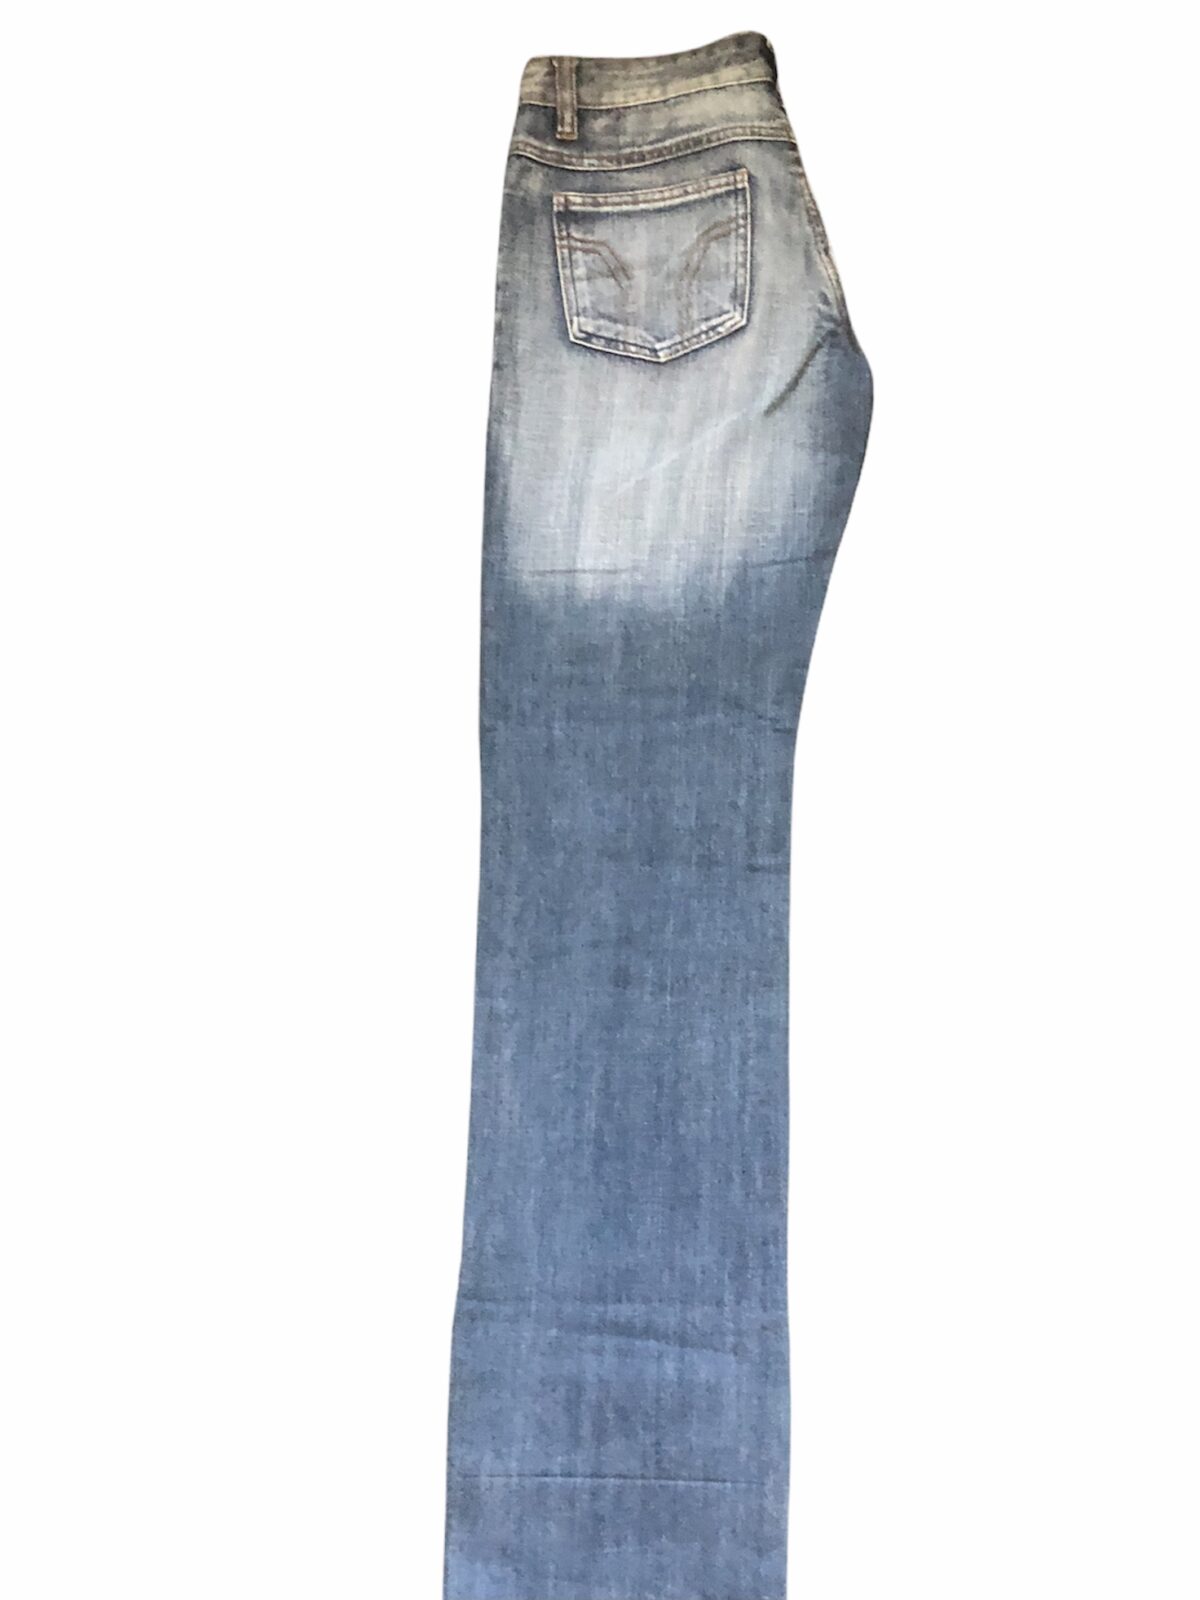 Dámské prodloužené jeans - XS/S